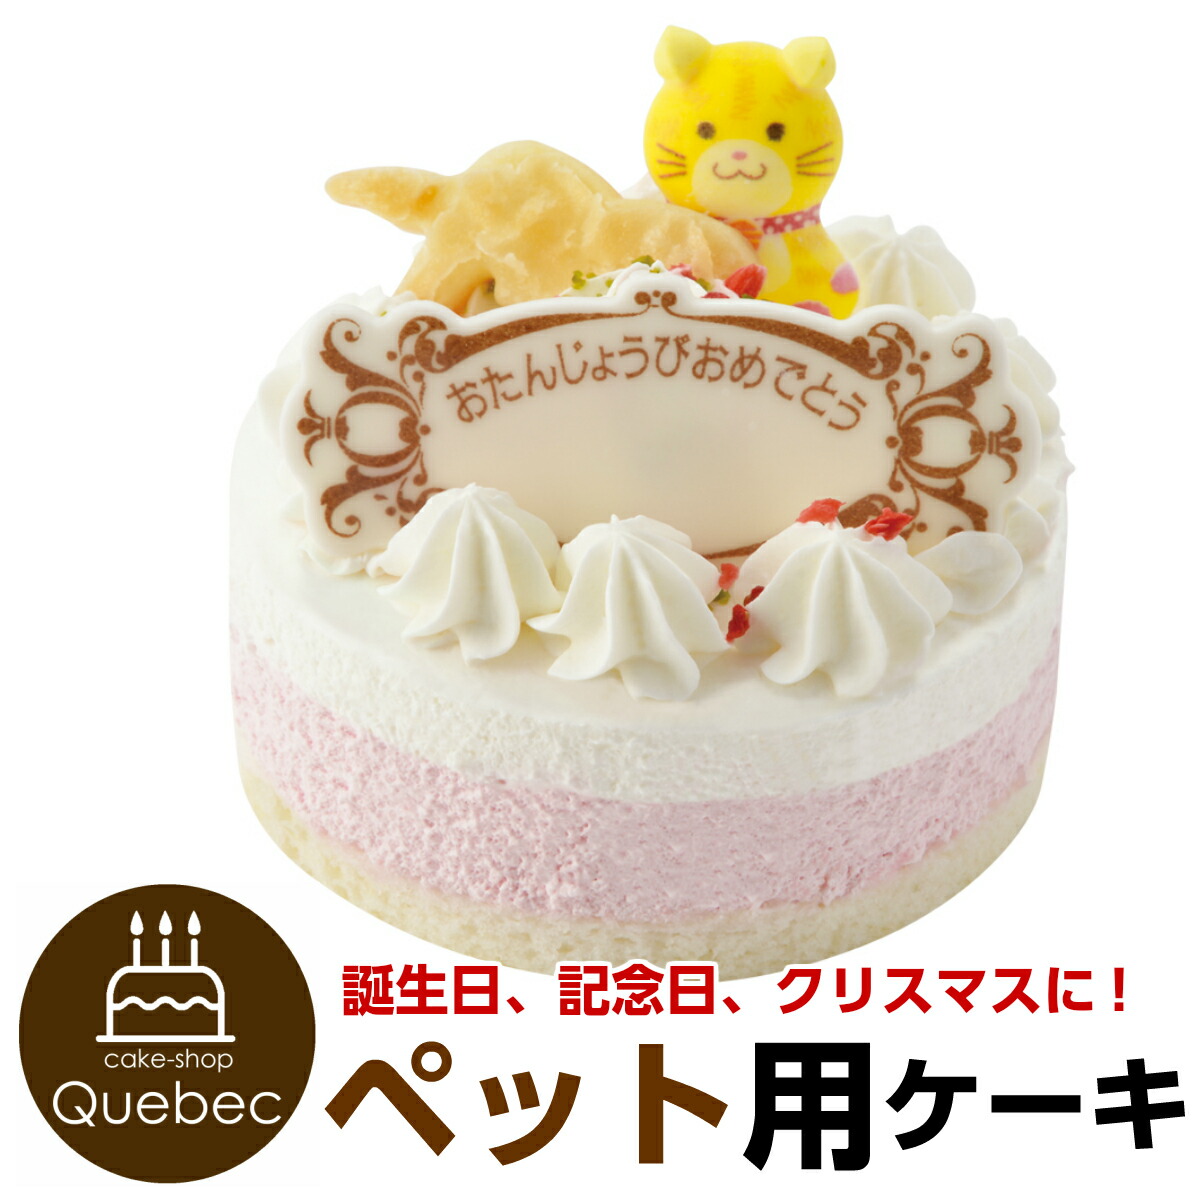 楽天市場 コミフ ベリーと豆乳のモンブラン ペットケーキ 誕生日ケーキ バースデーケーキ 犬用 ワンちゃん用 誕生日ケーキのお店ケベック